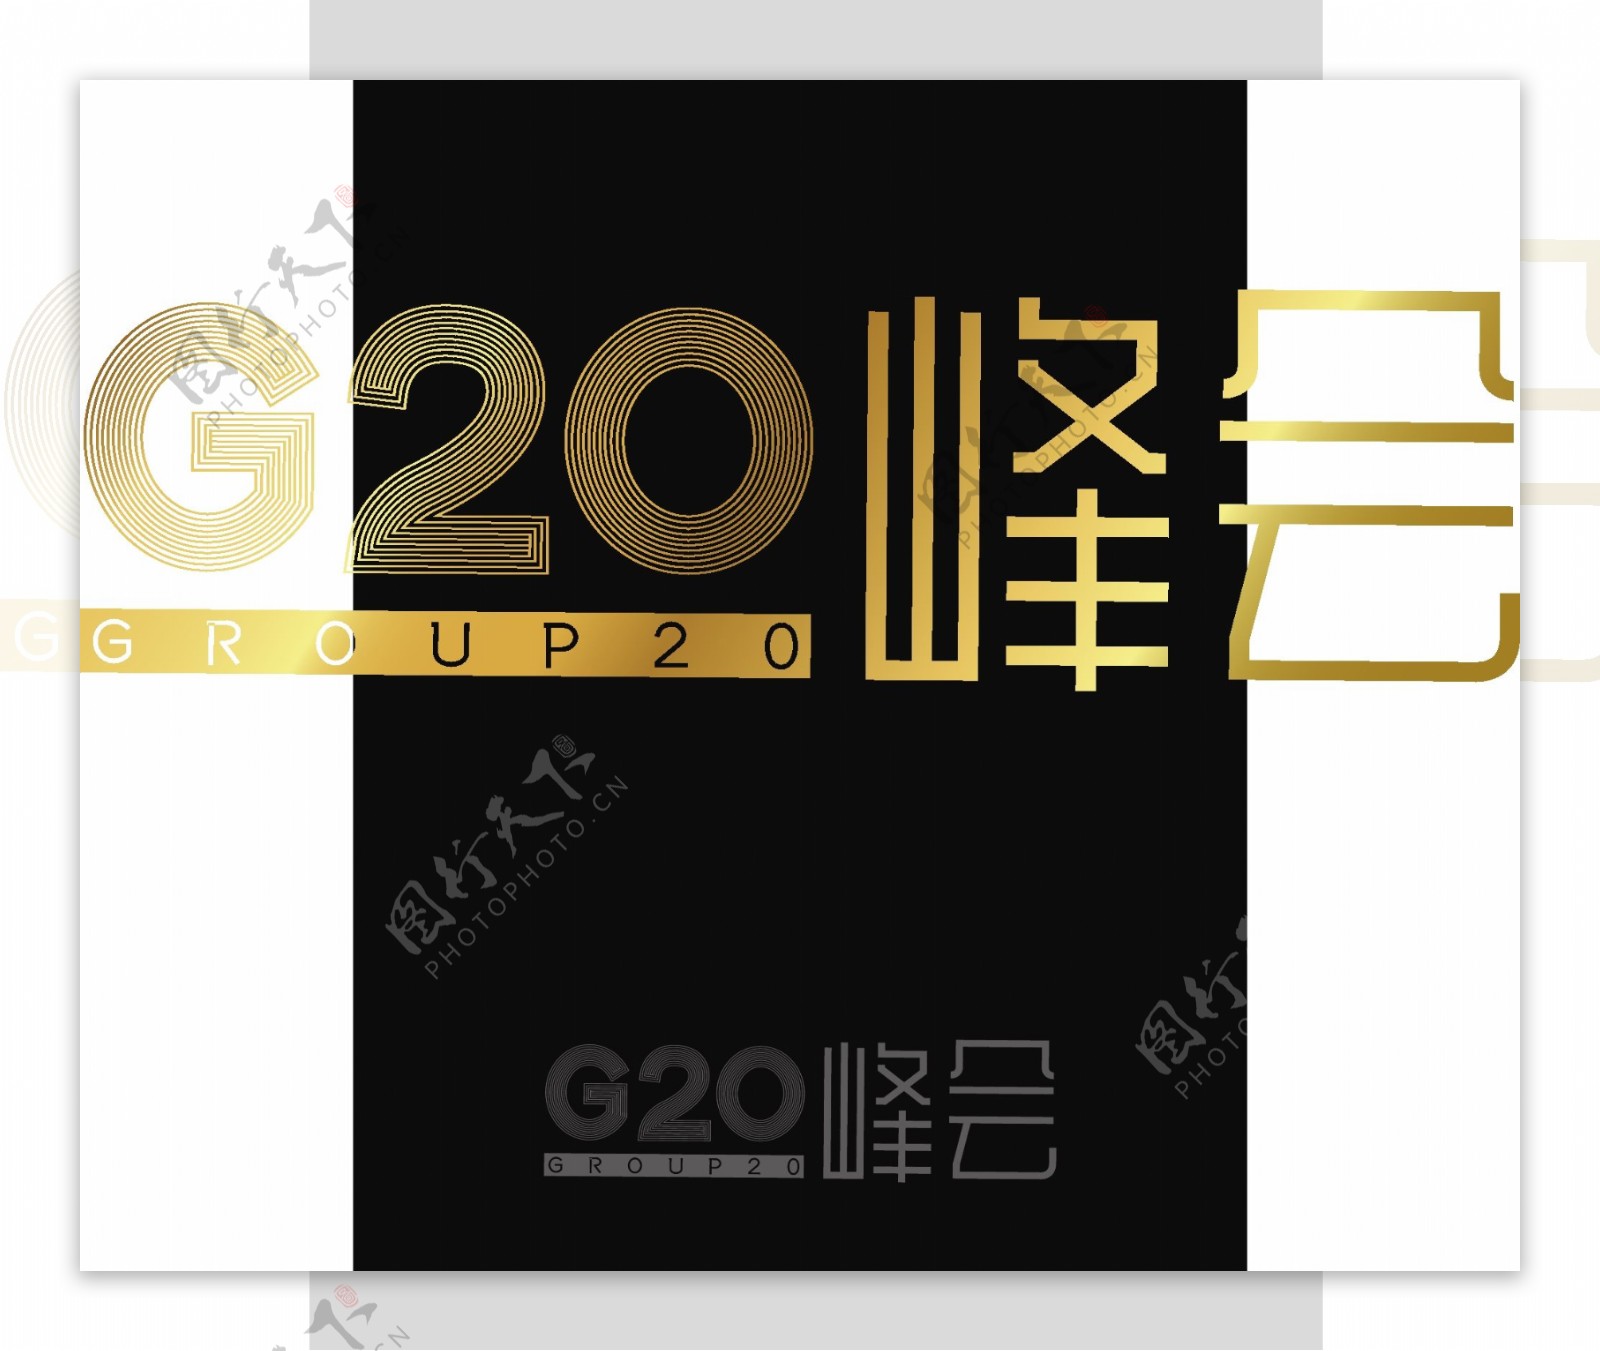 G20峰会创意字体立体艺术字